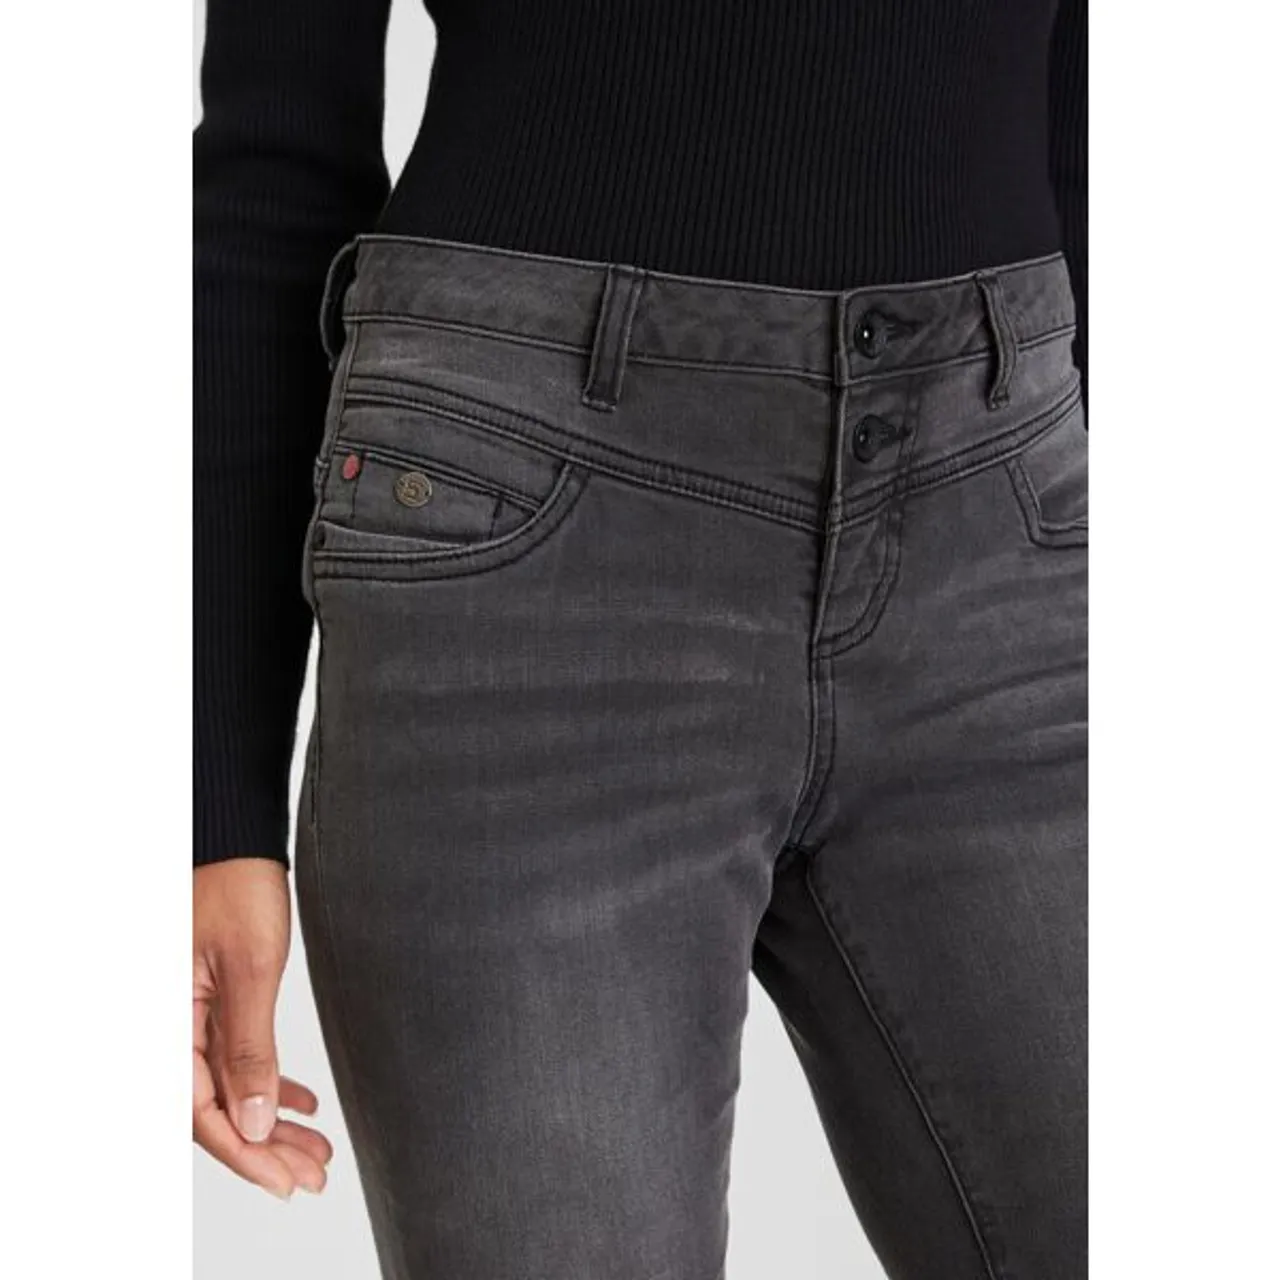 5-Pocket-Jeans H.I.S "djunaHS" Gr. 33, Länge 30, grau (dark grey) Damen Jeans 5-Pocket-Jeans ökologische, wassersparende Produktion durch Ozon Wash